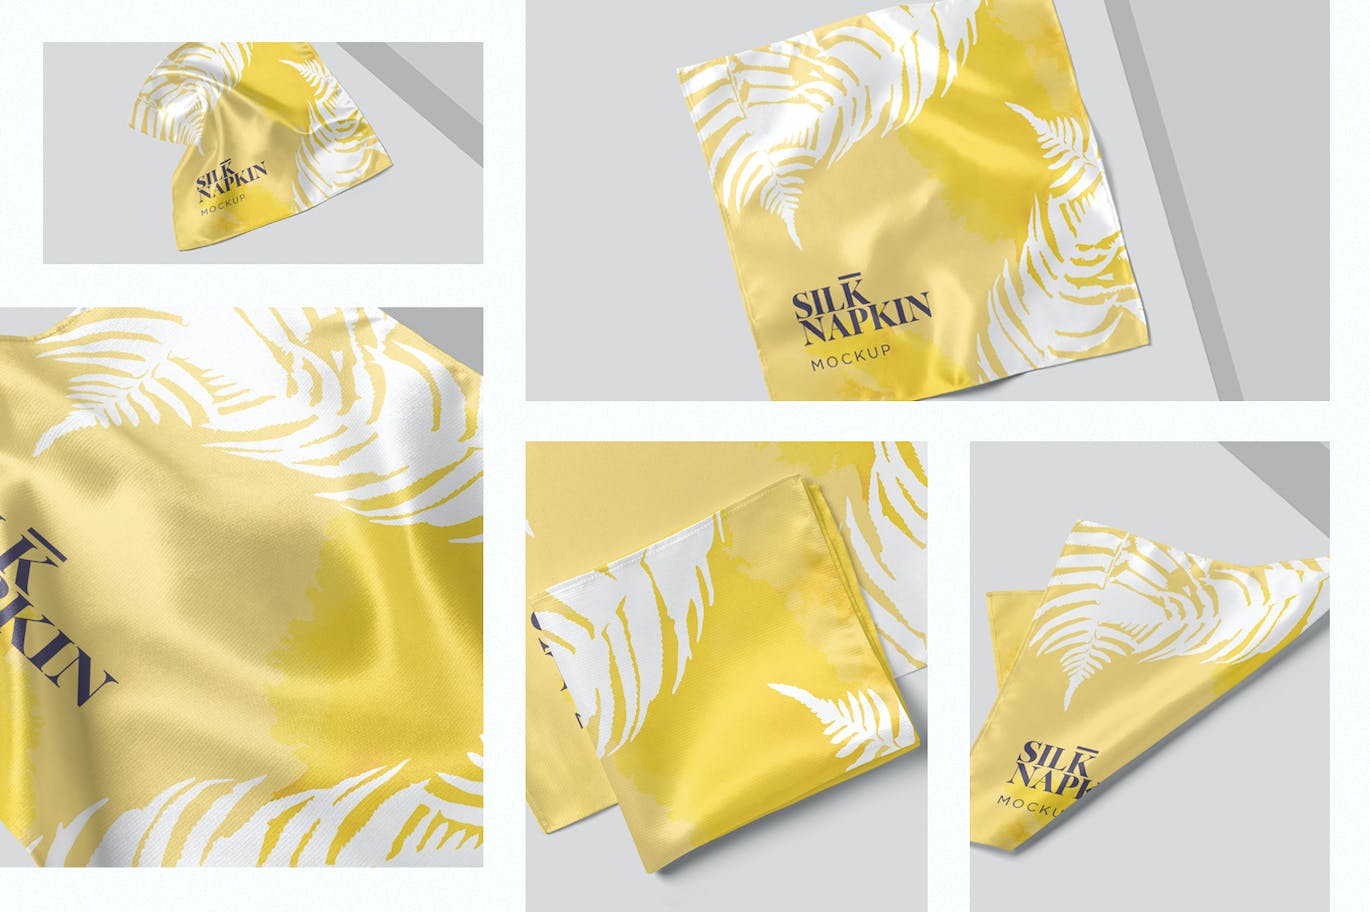 丝绸餐巾设计样机 Silk Napkin Mockups 样机素材 第1张